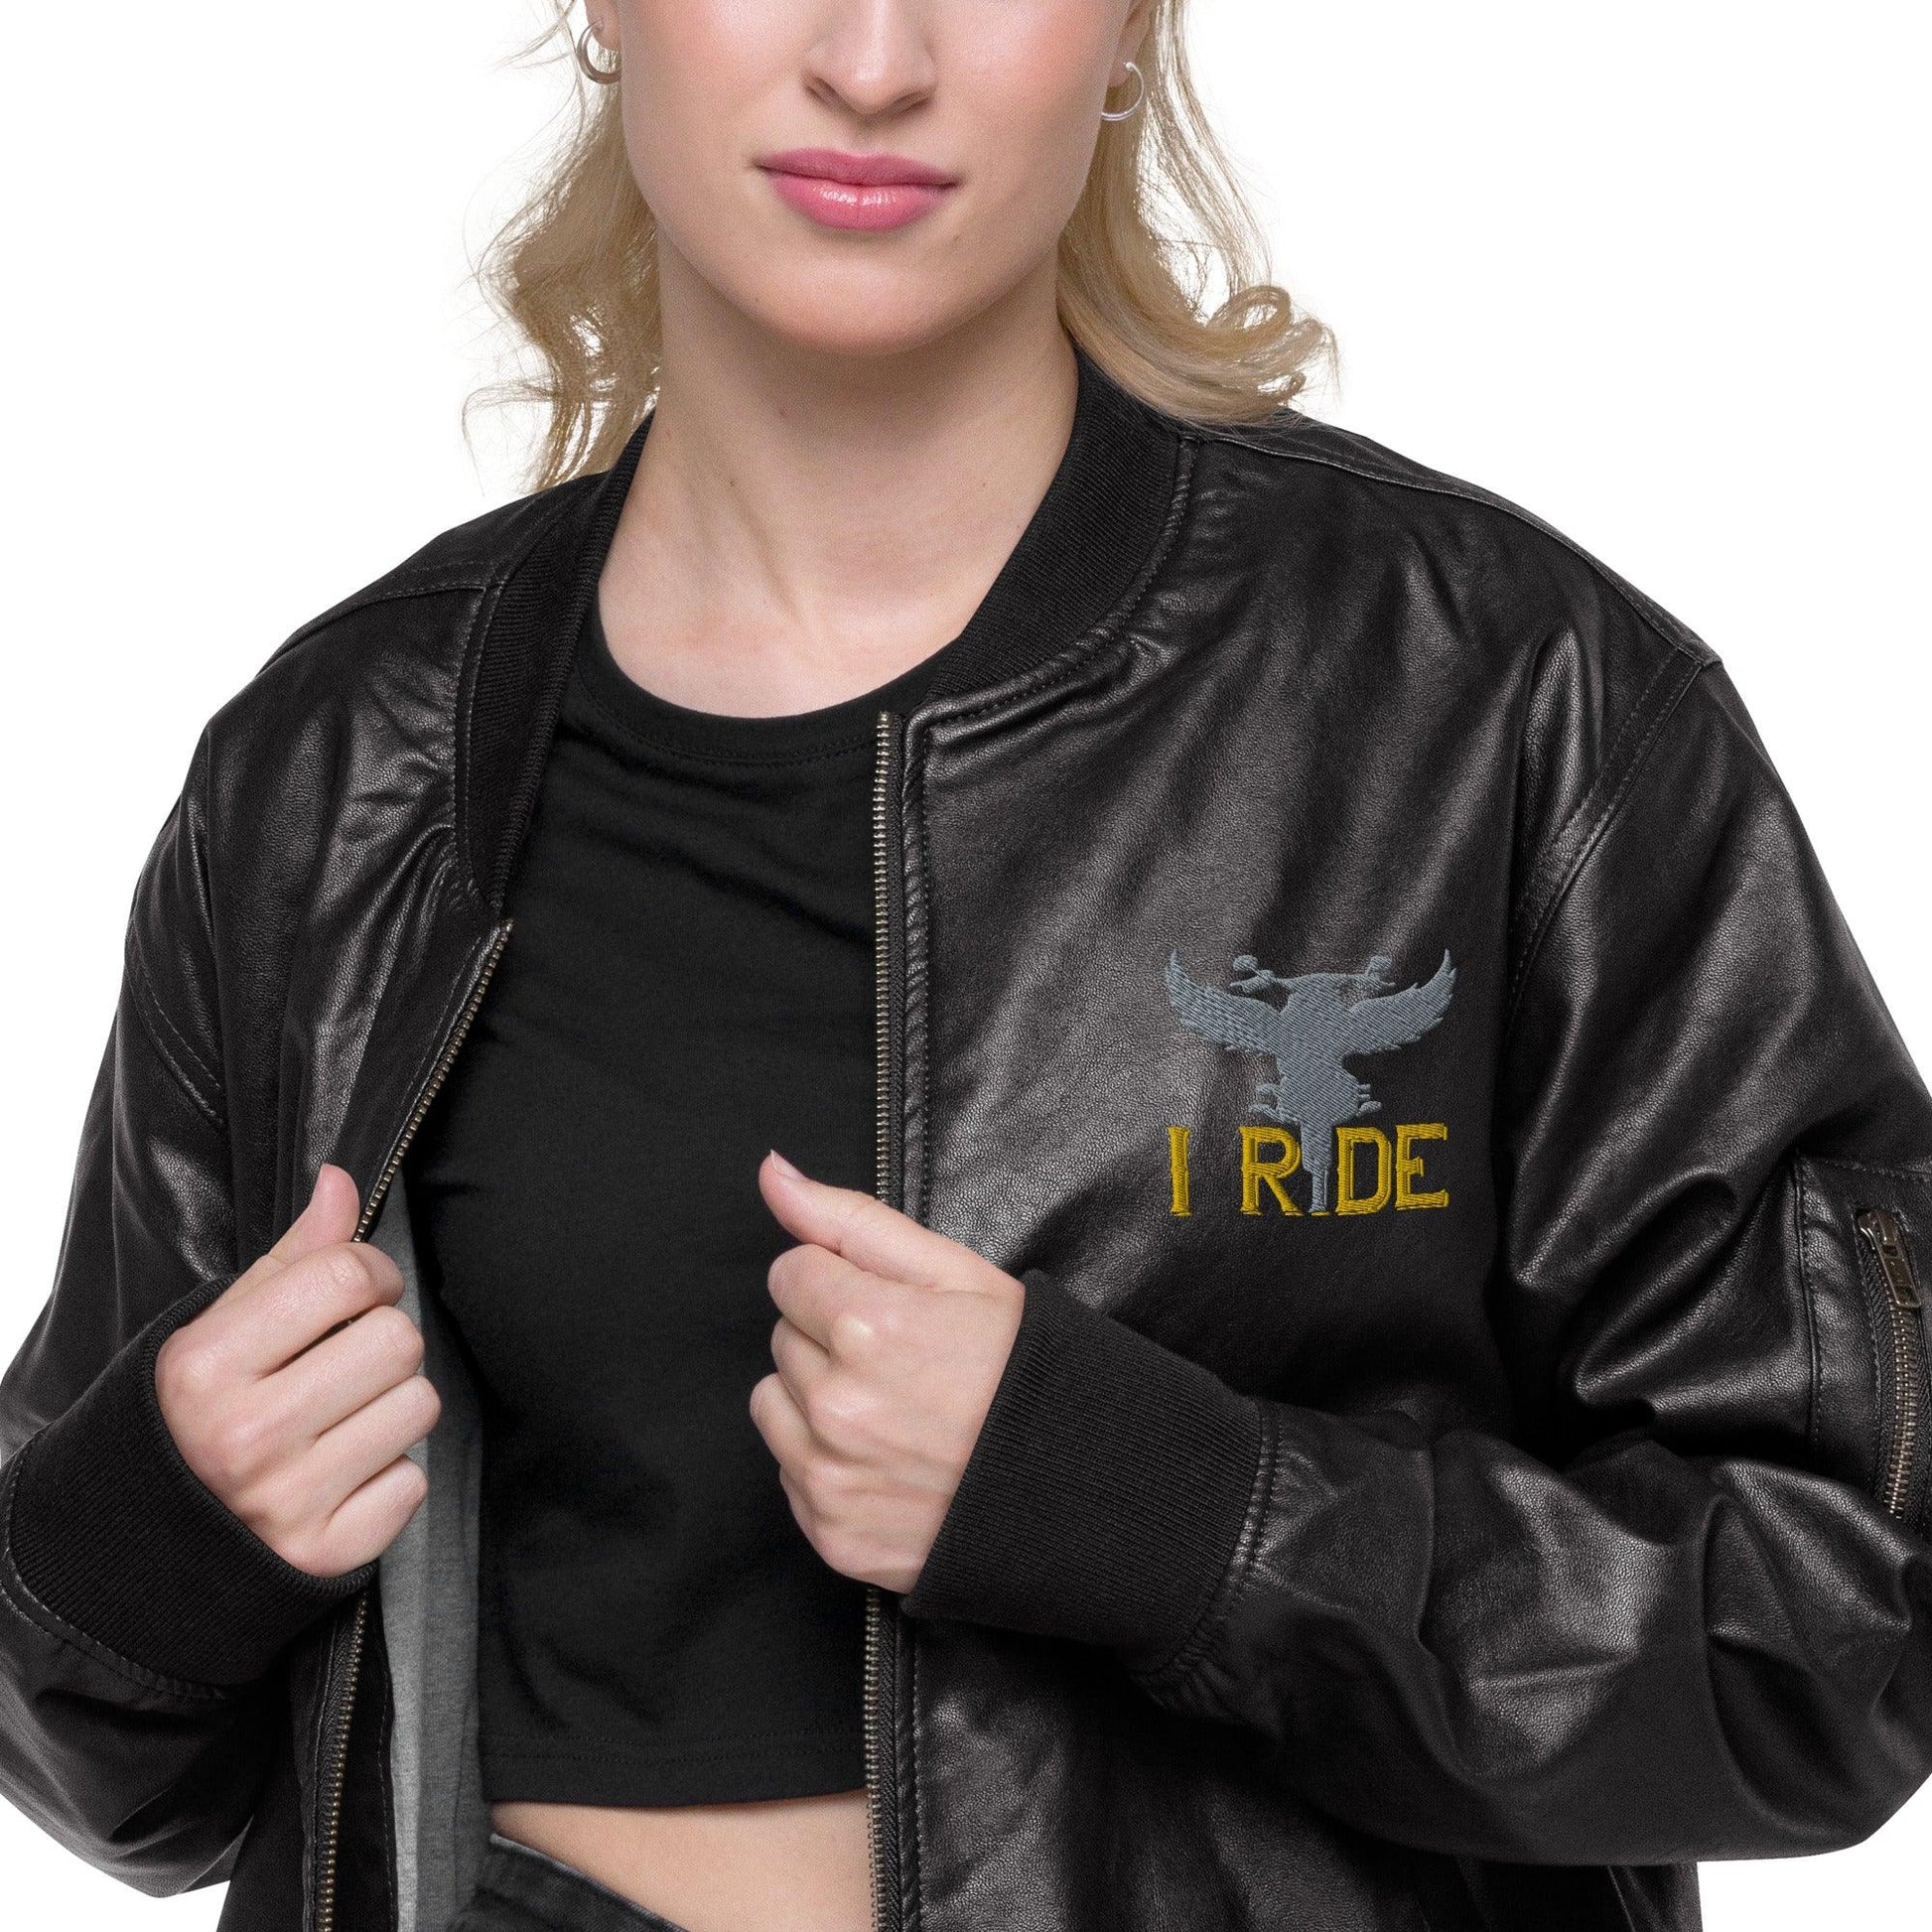 Leather Bomber Jacket I Ride - Canvazon